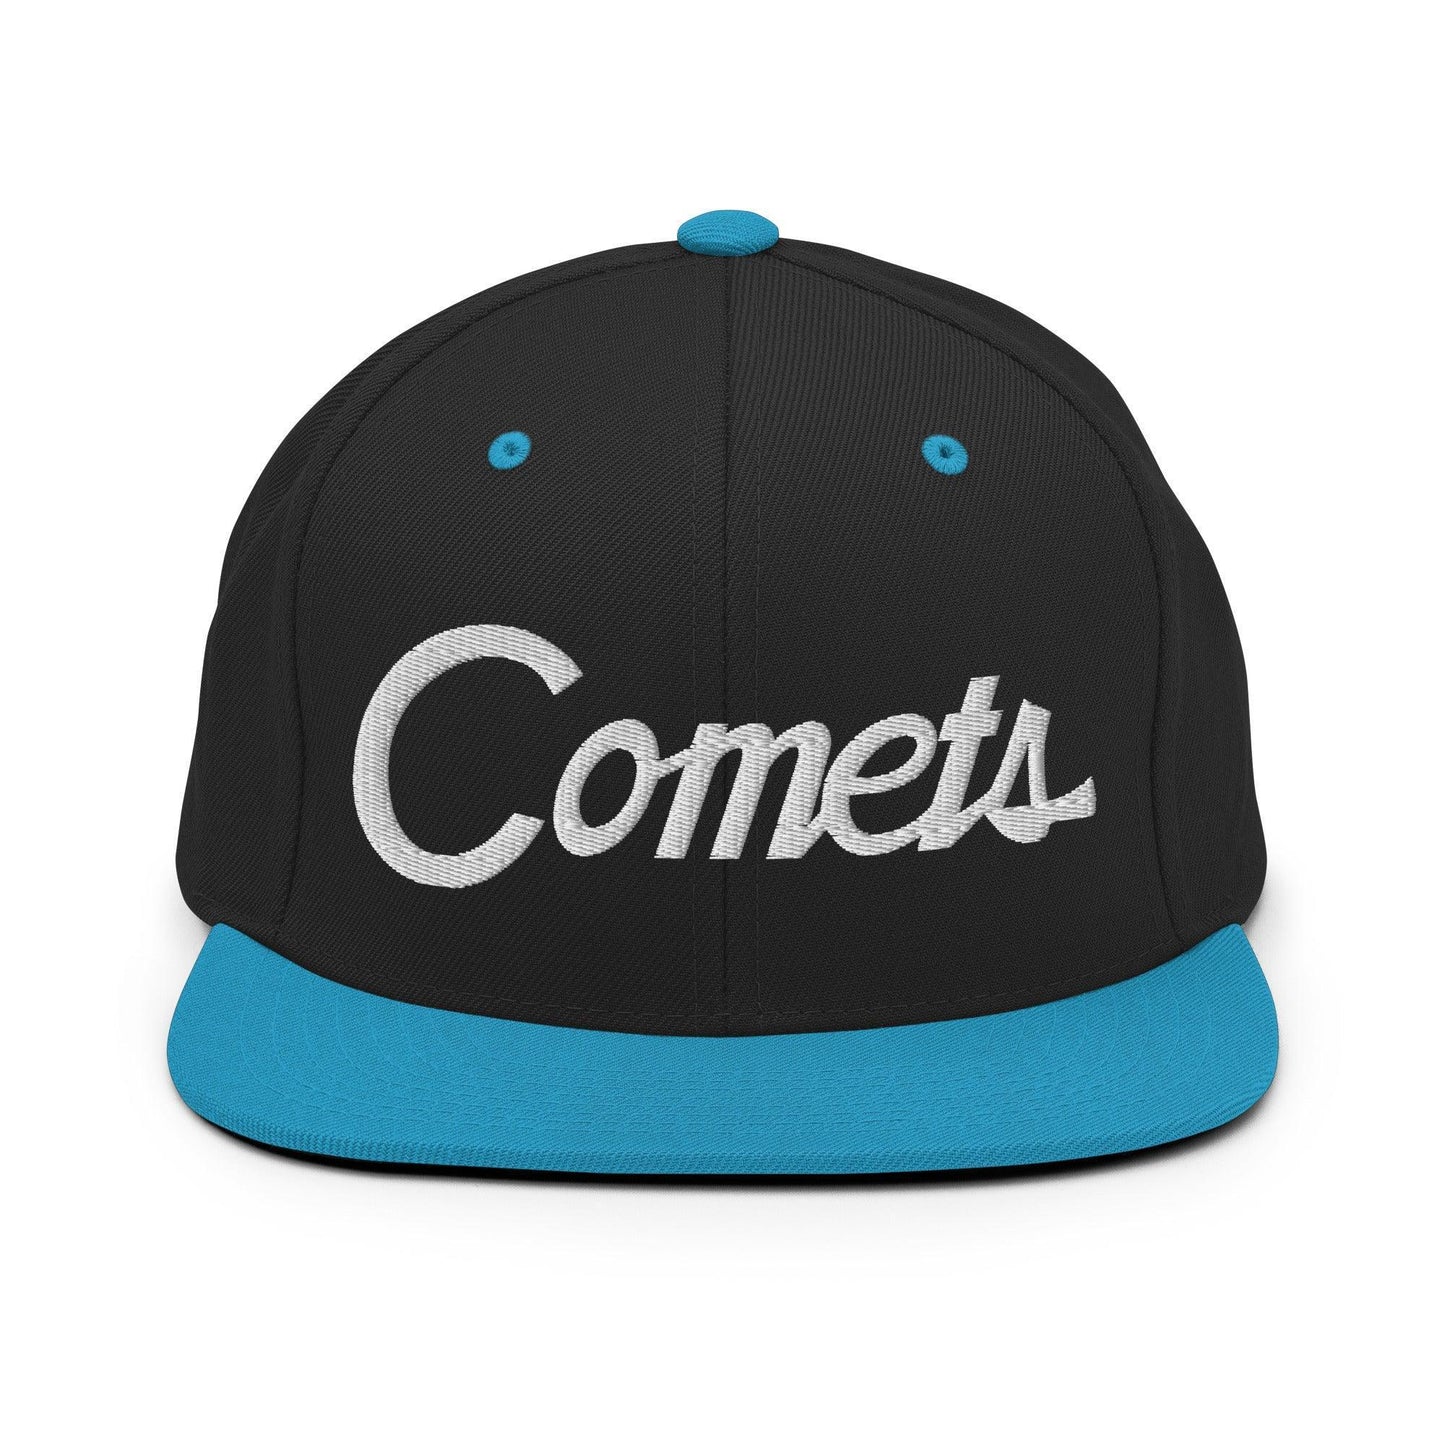 Comets School Mascot Script Snapback Hat Black Teal